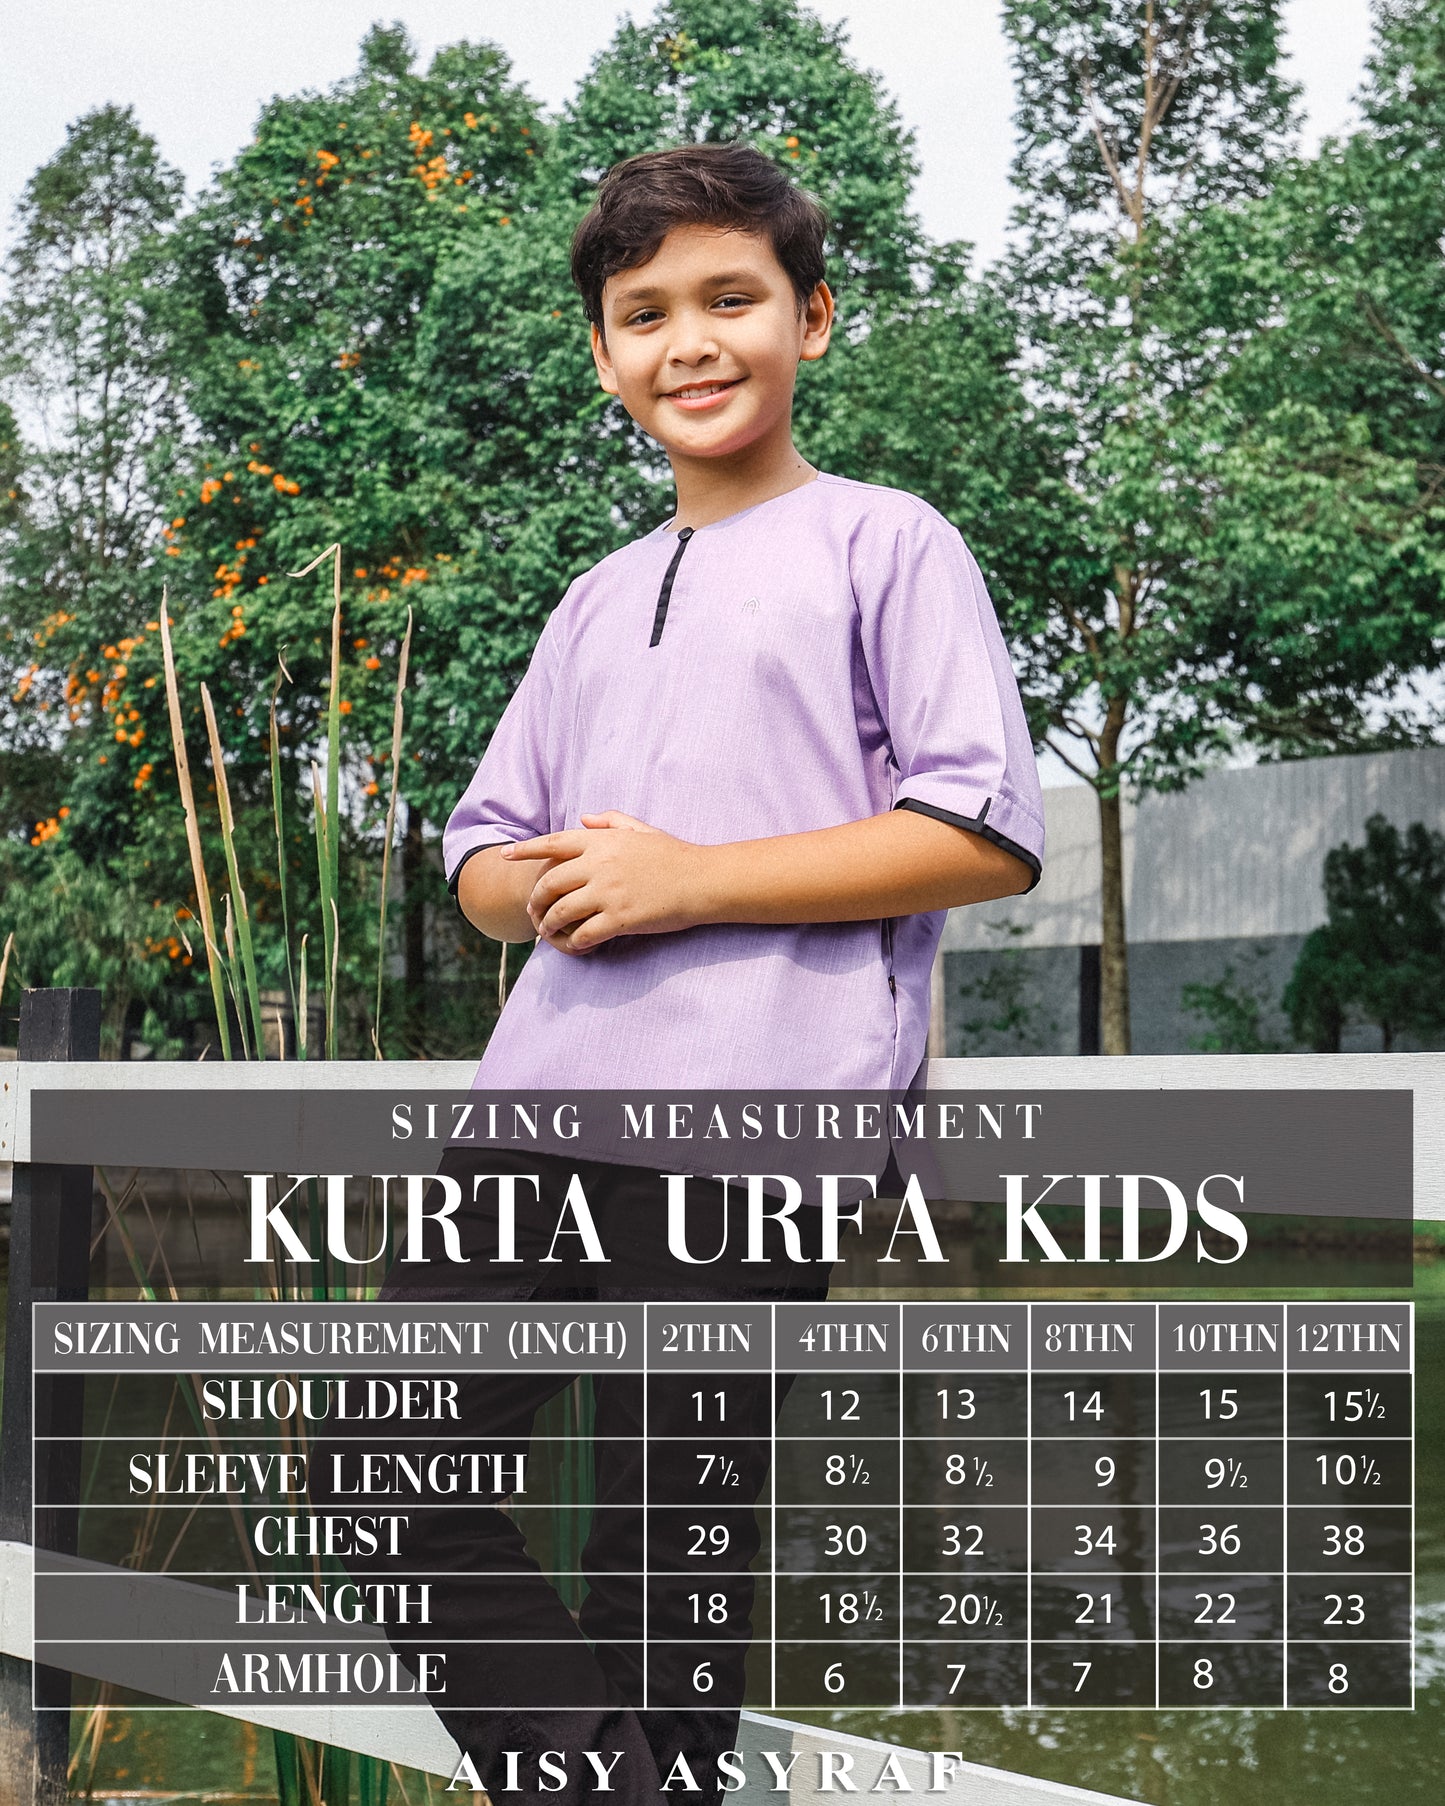 Kurta Urfa Kids - Magenta